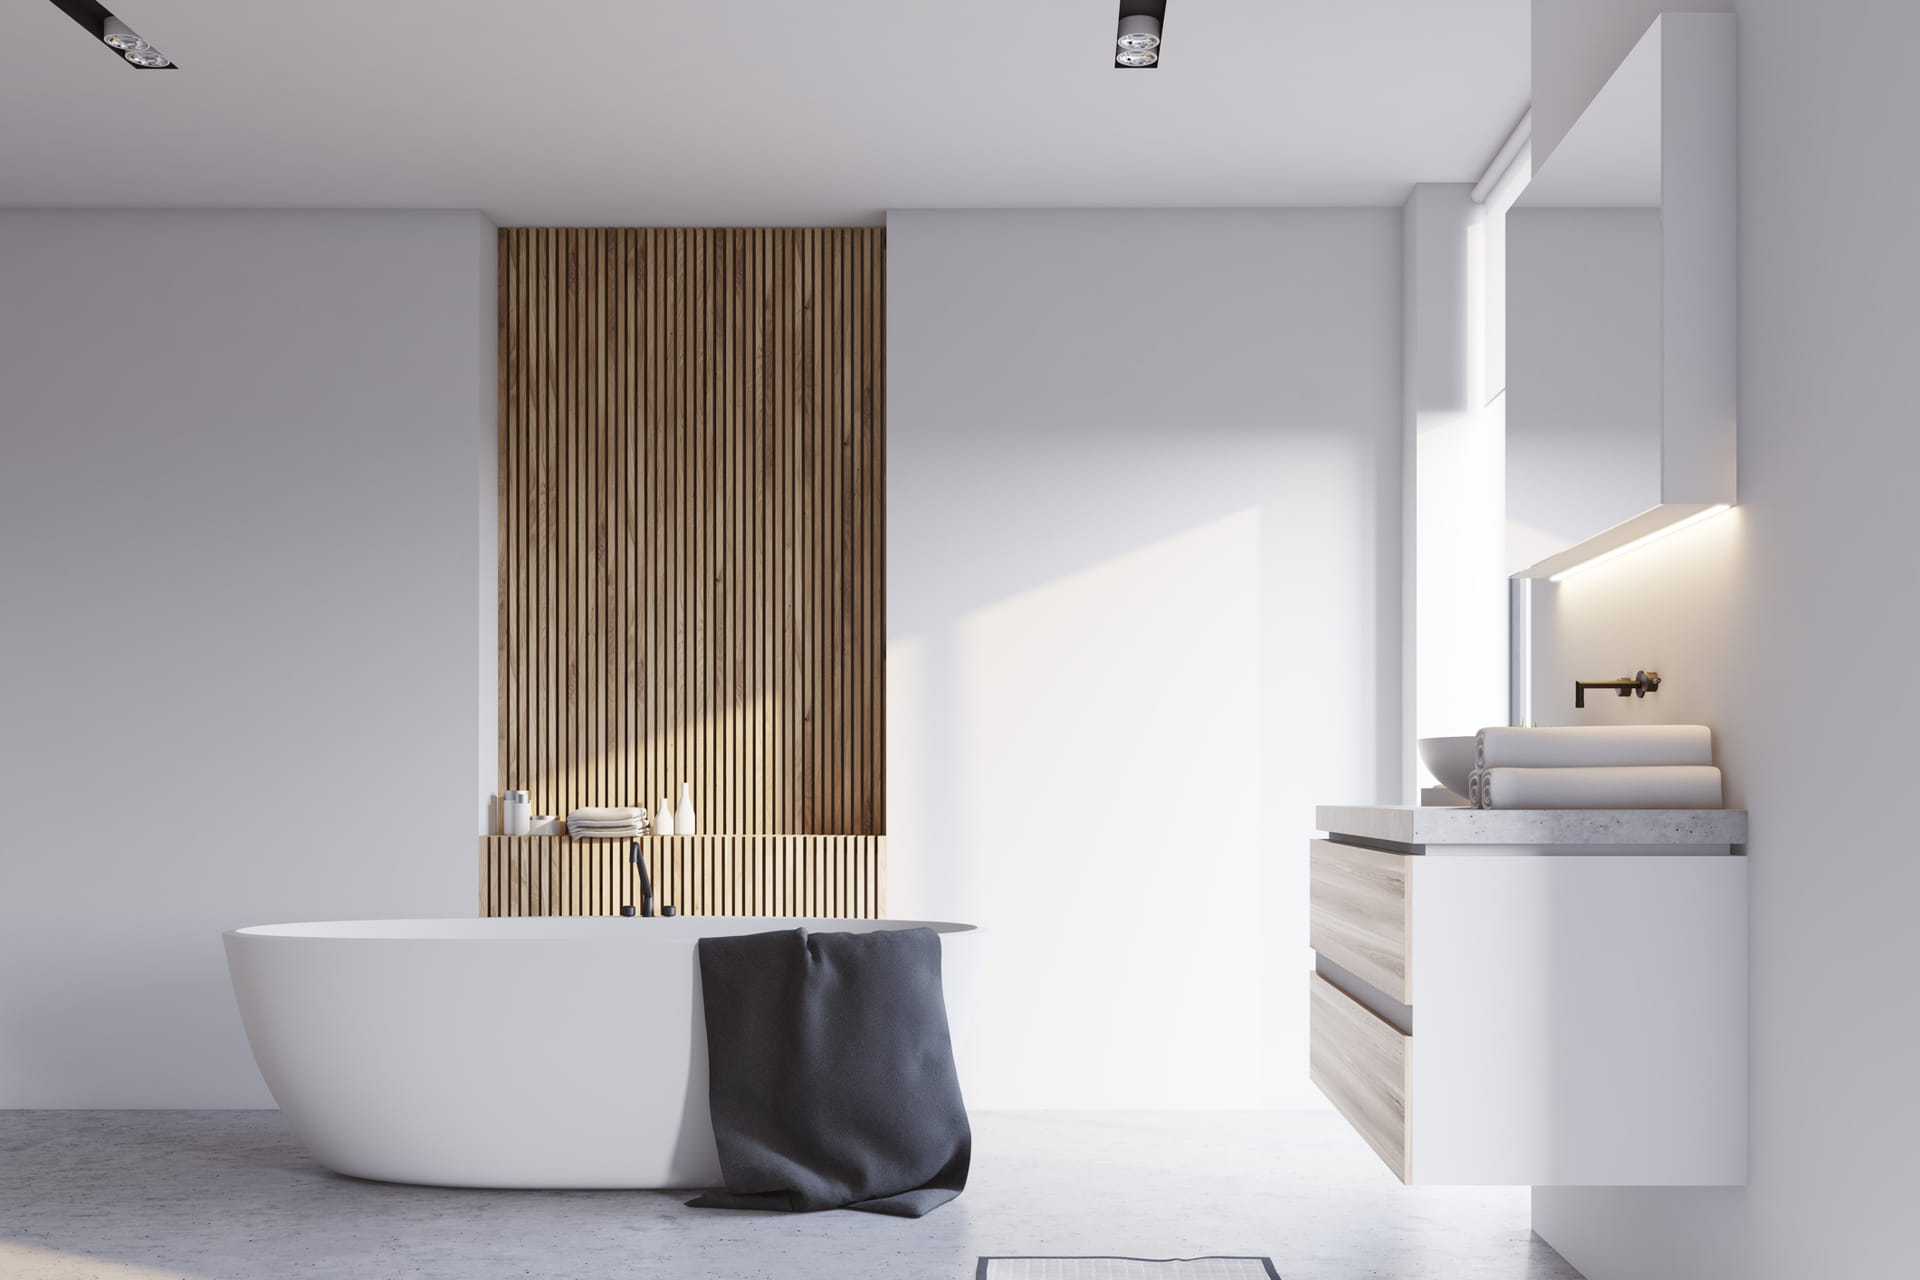 Phòng tắm hiện đại được lợp bằng microcemento màu trắng